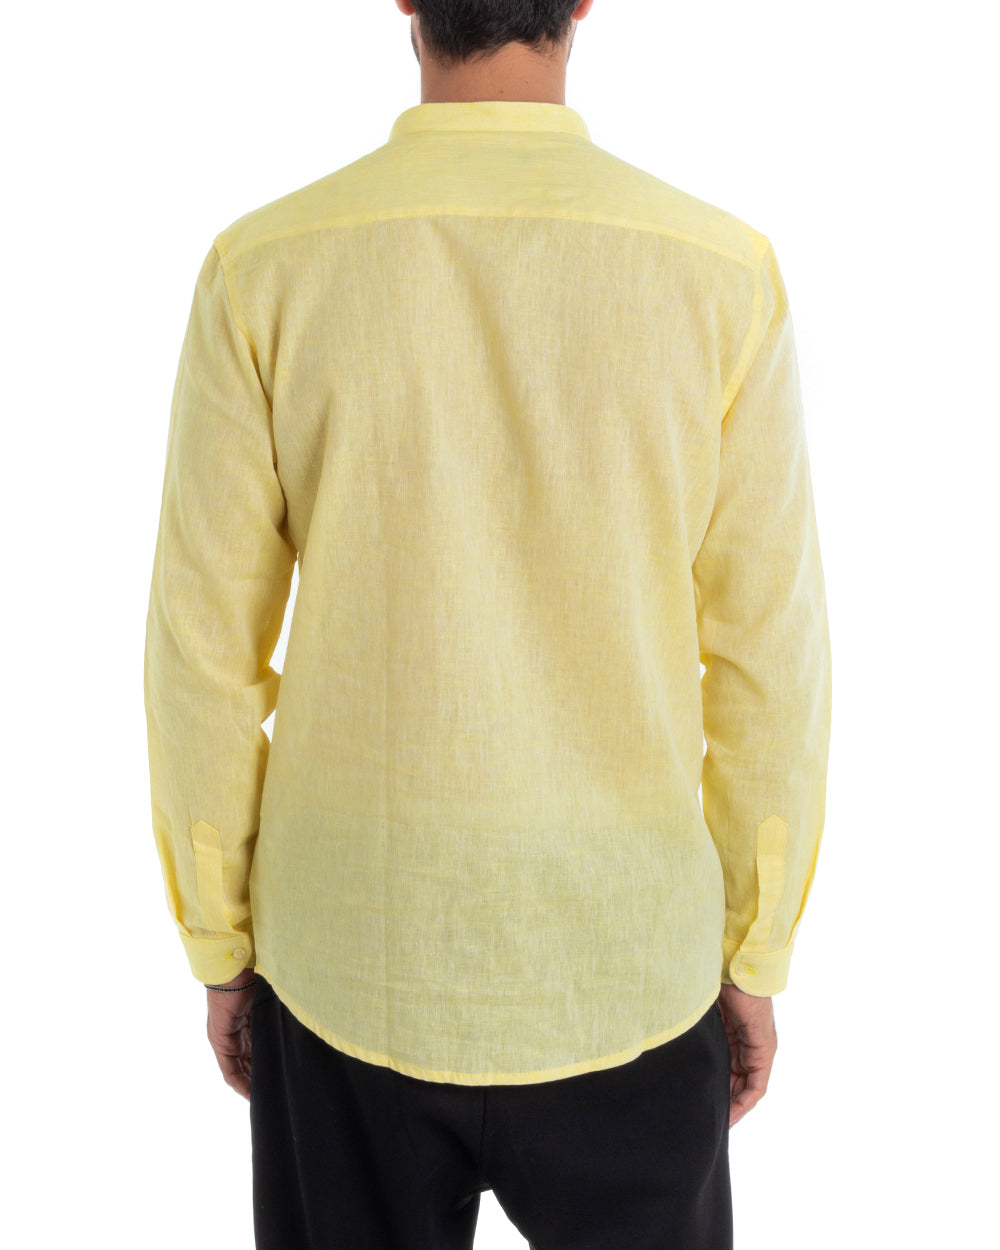 Men's Mandarin Collar Tailored Shirt Long Sleeve Melange Linen Light Yellow GIOSAL-C2692A